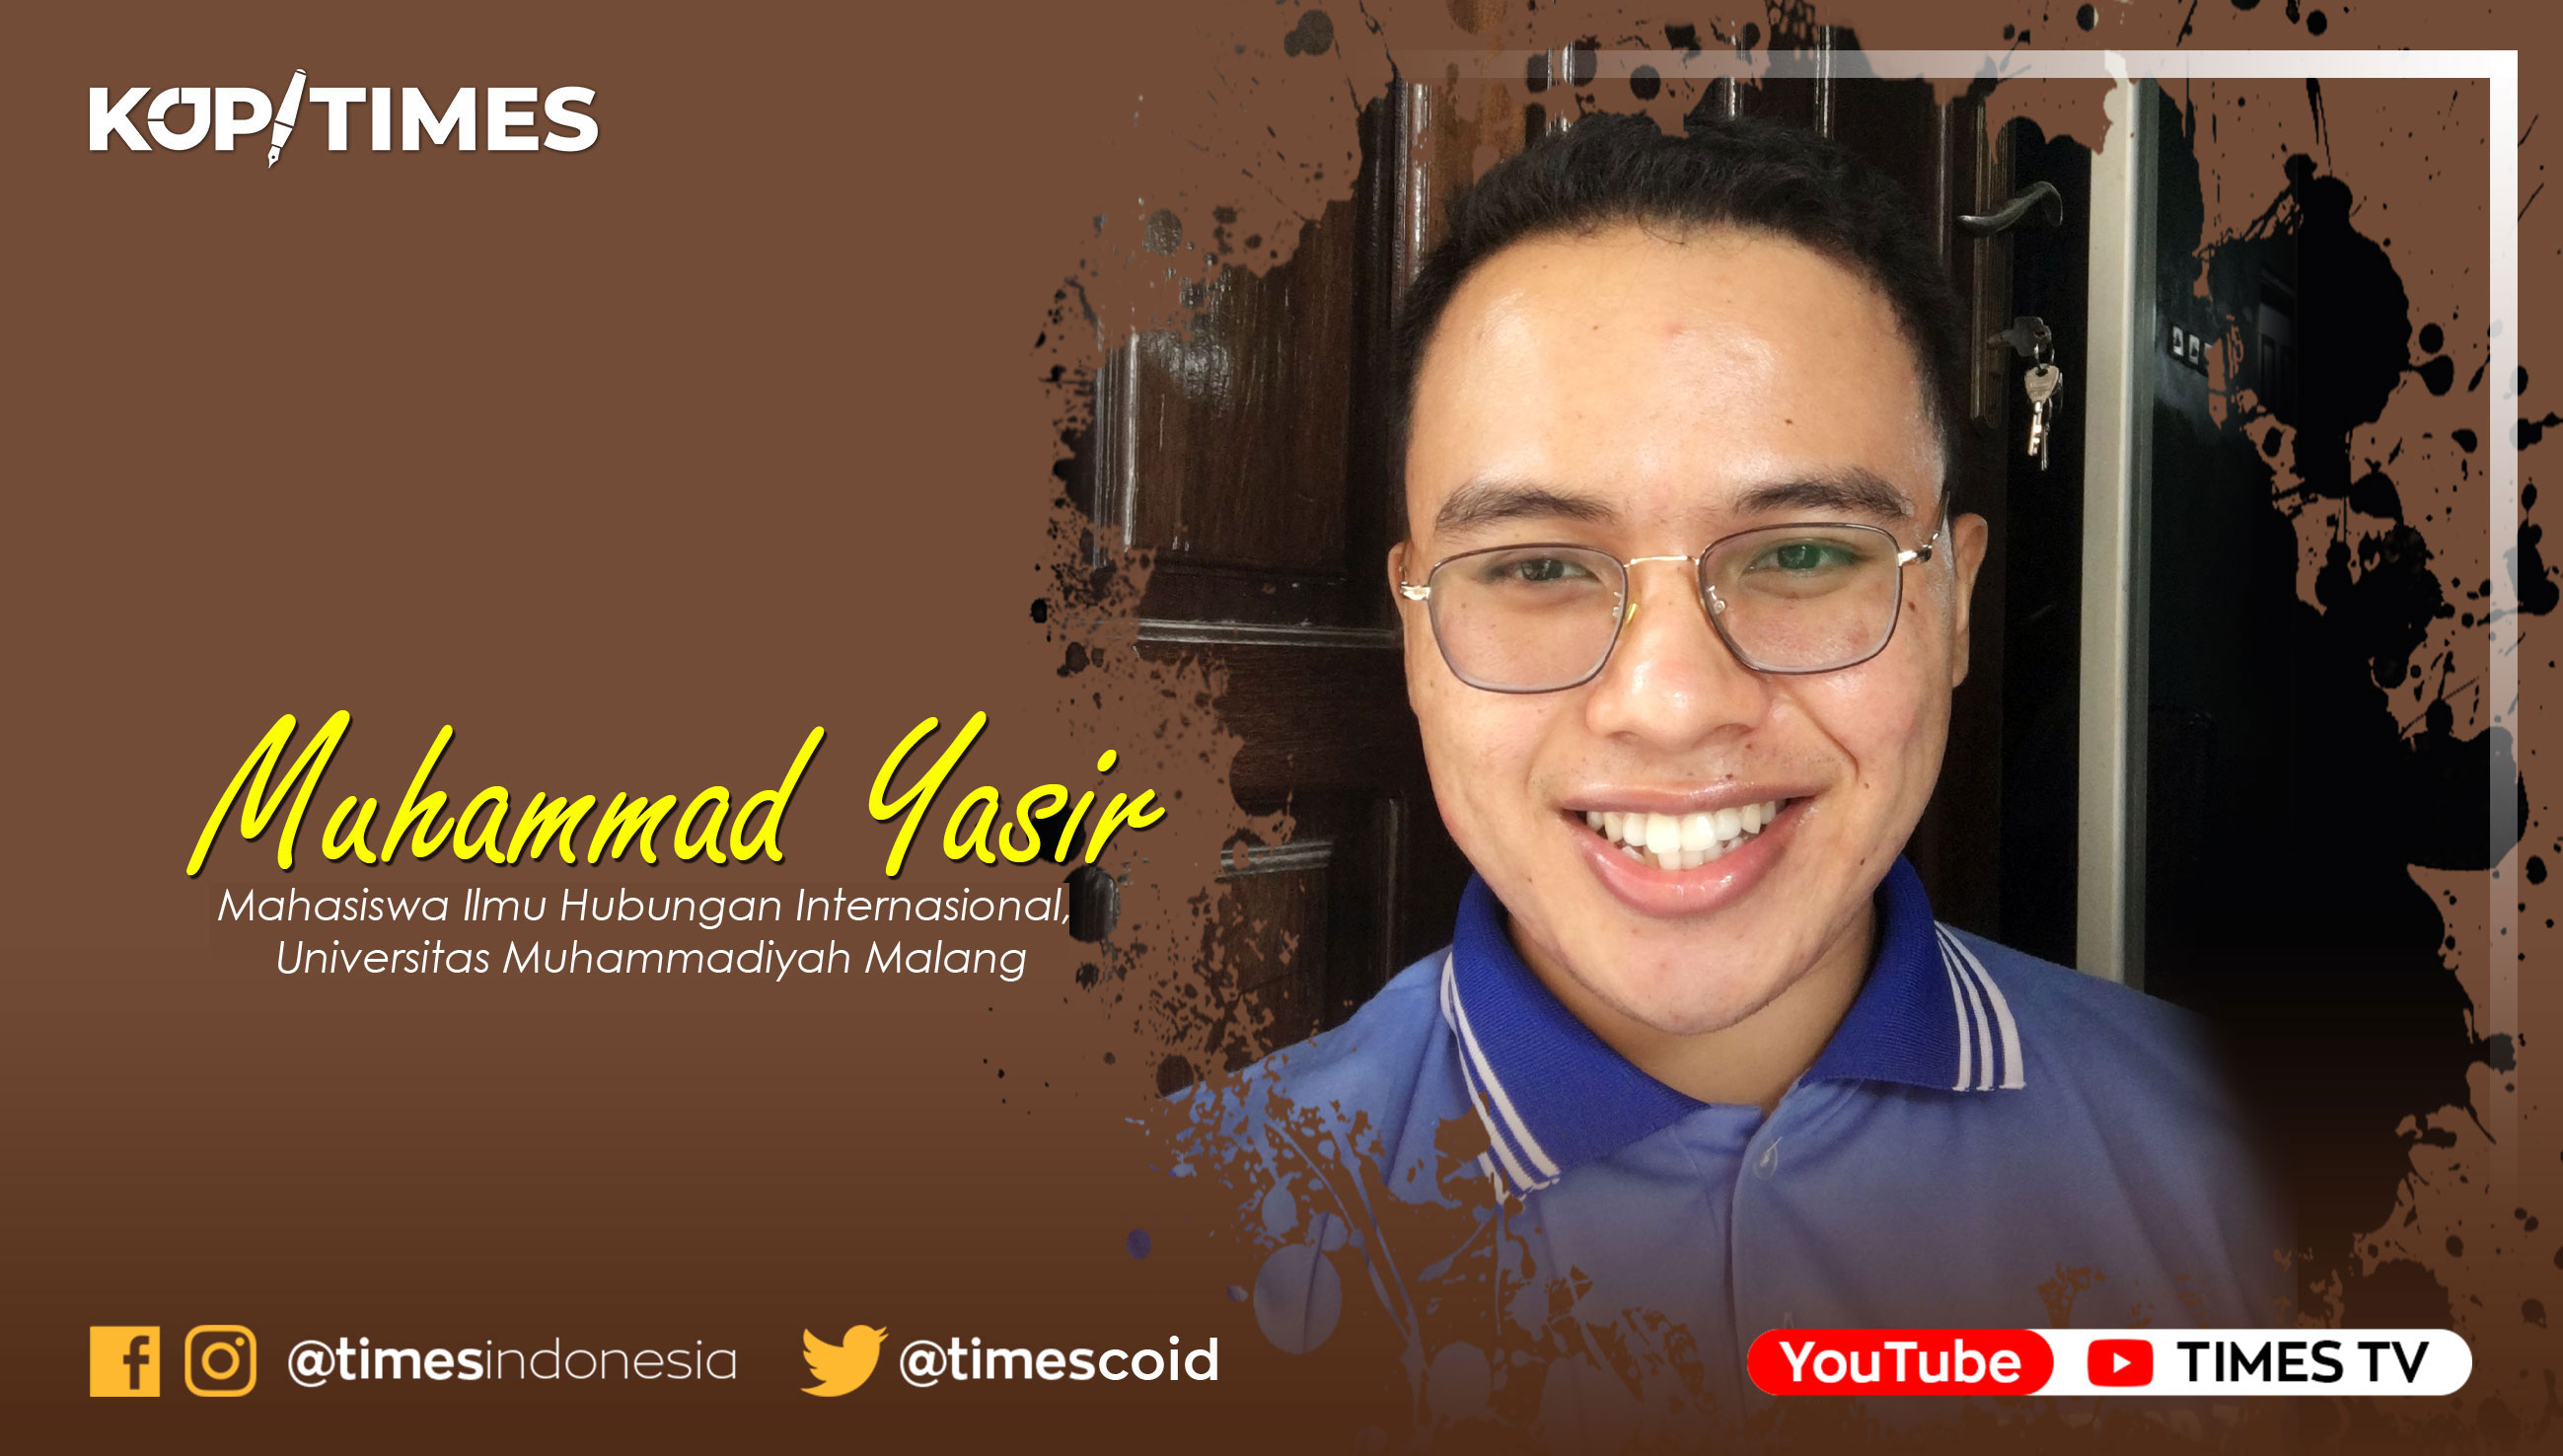 Muhammad Yasir, Mahasiswa Ilmu Hubungan Internasional, Universitas Muhammadiyah Malang.